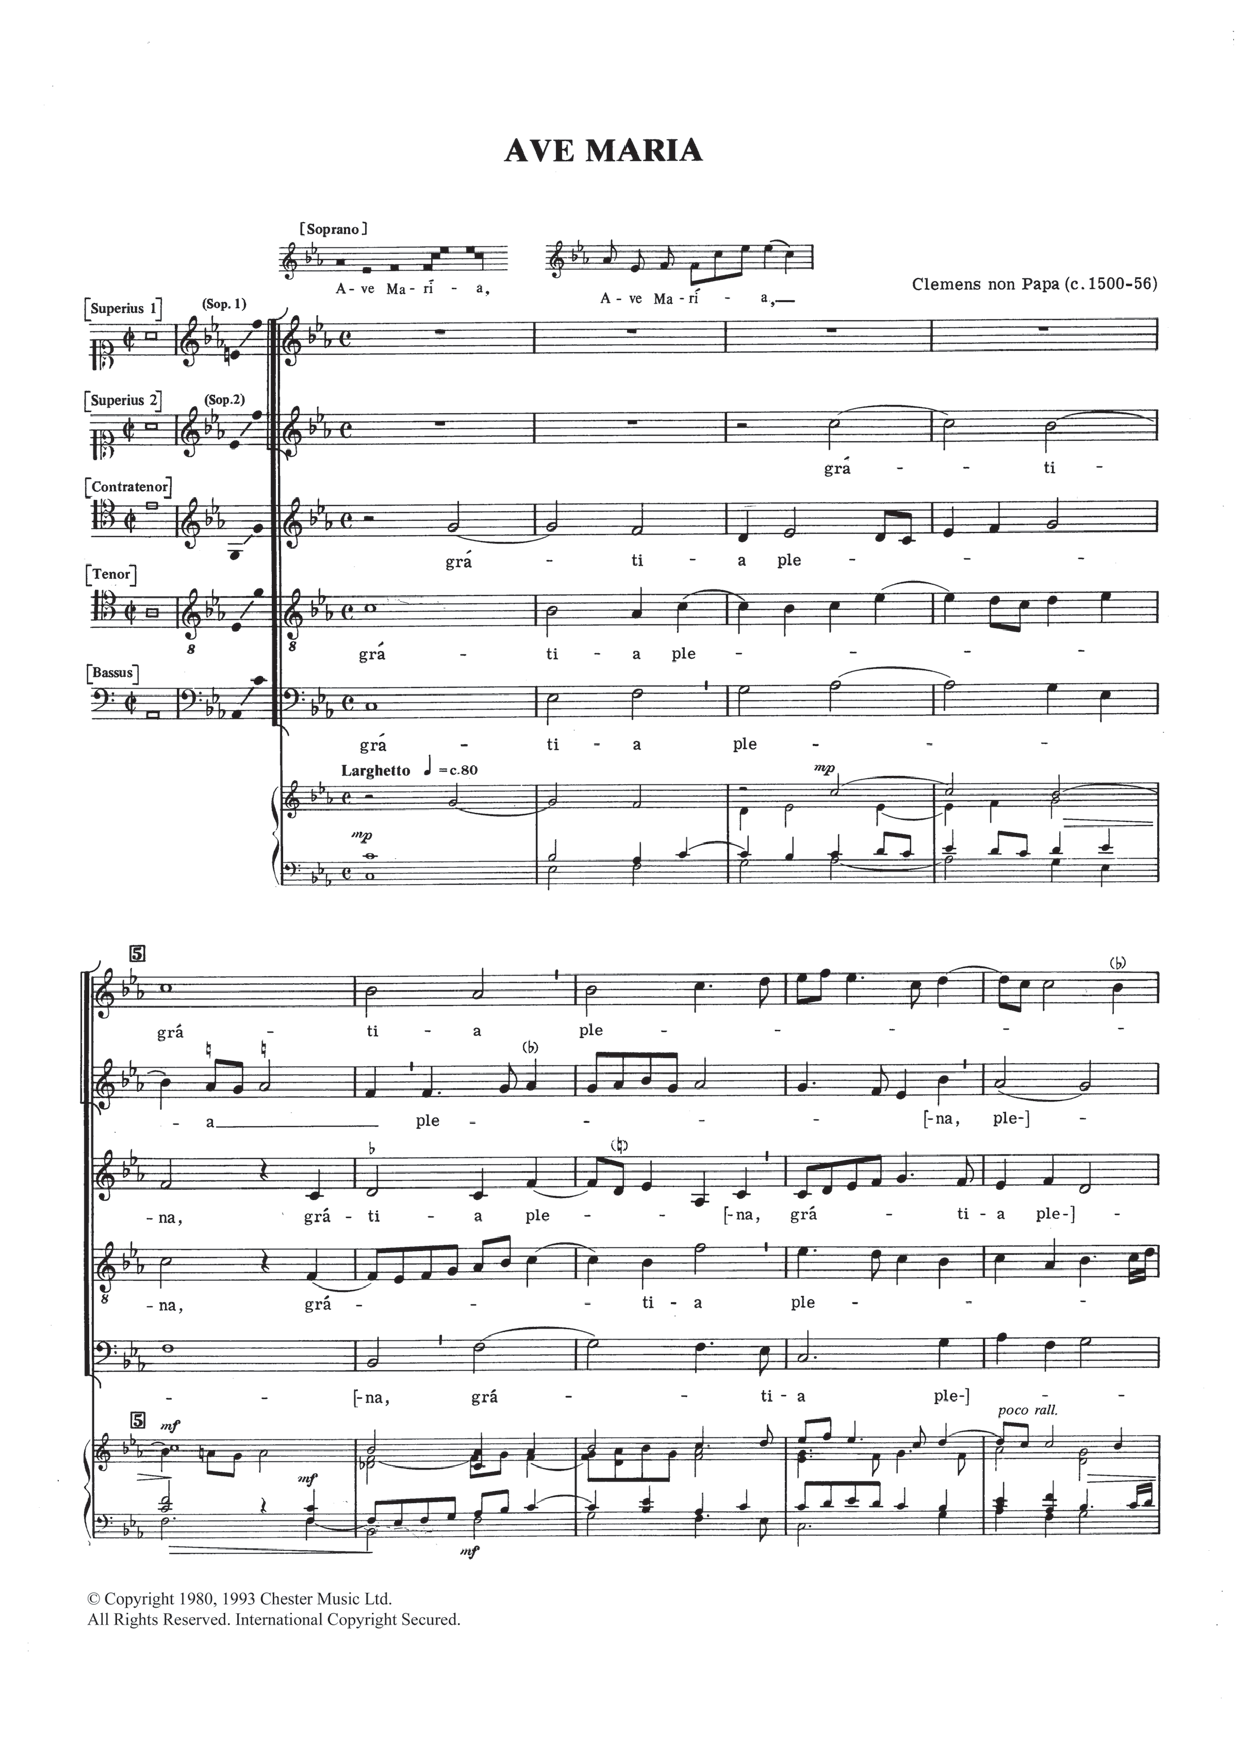 Ave Maria (SATB Choir) von Jacob Clemens Non Papa